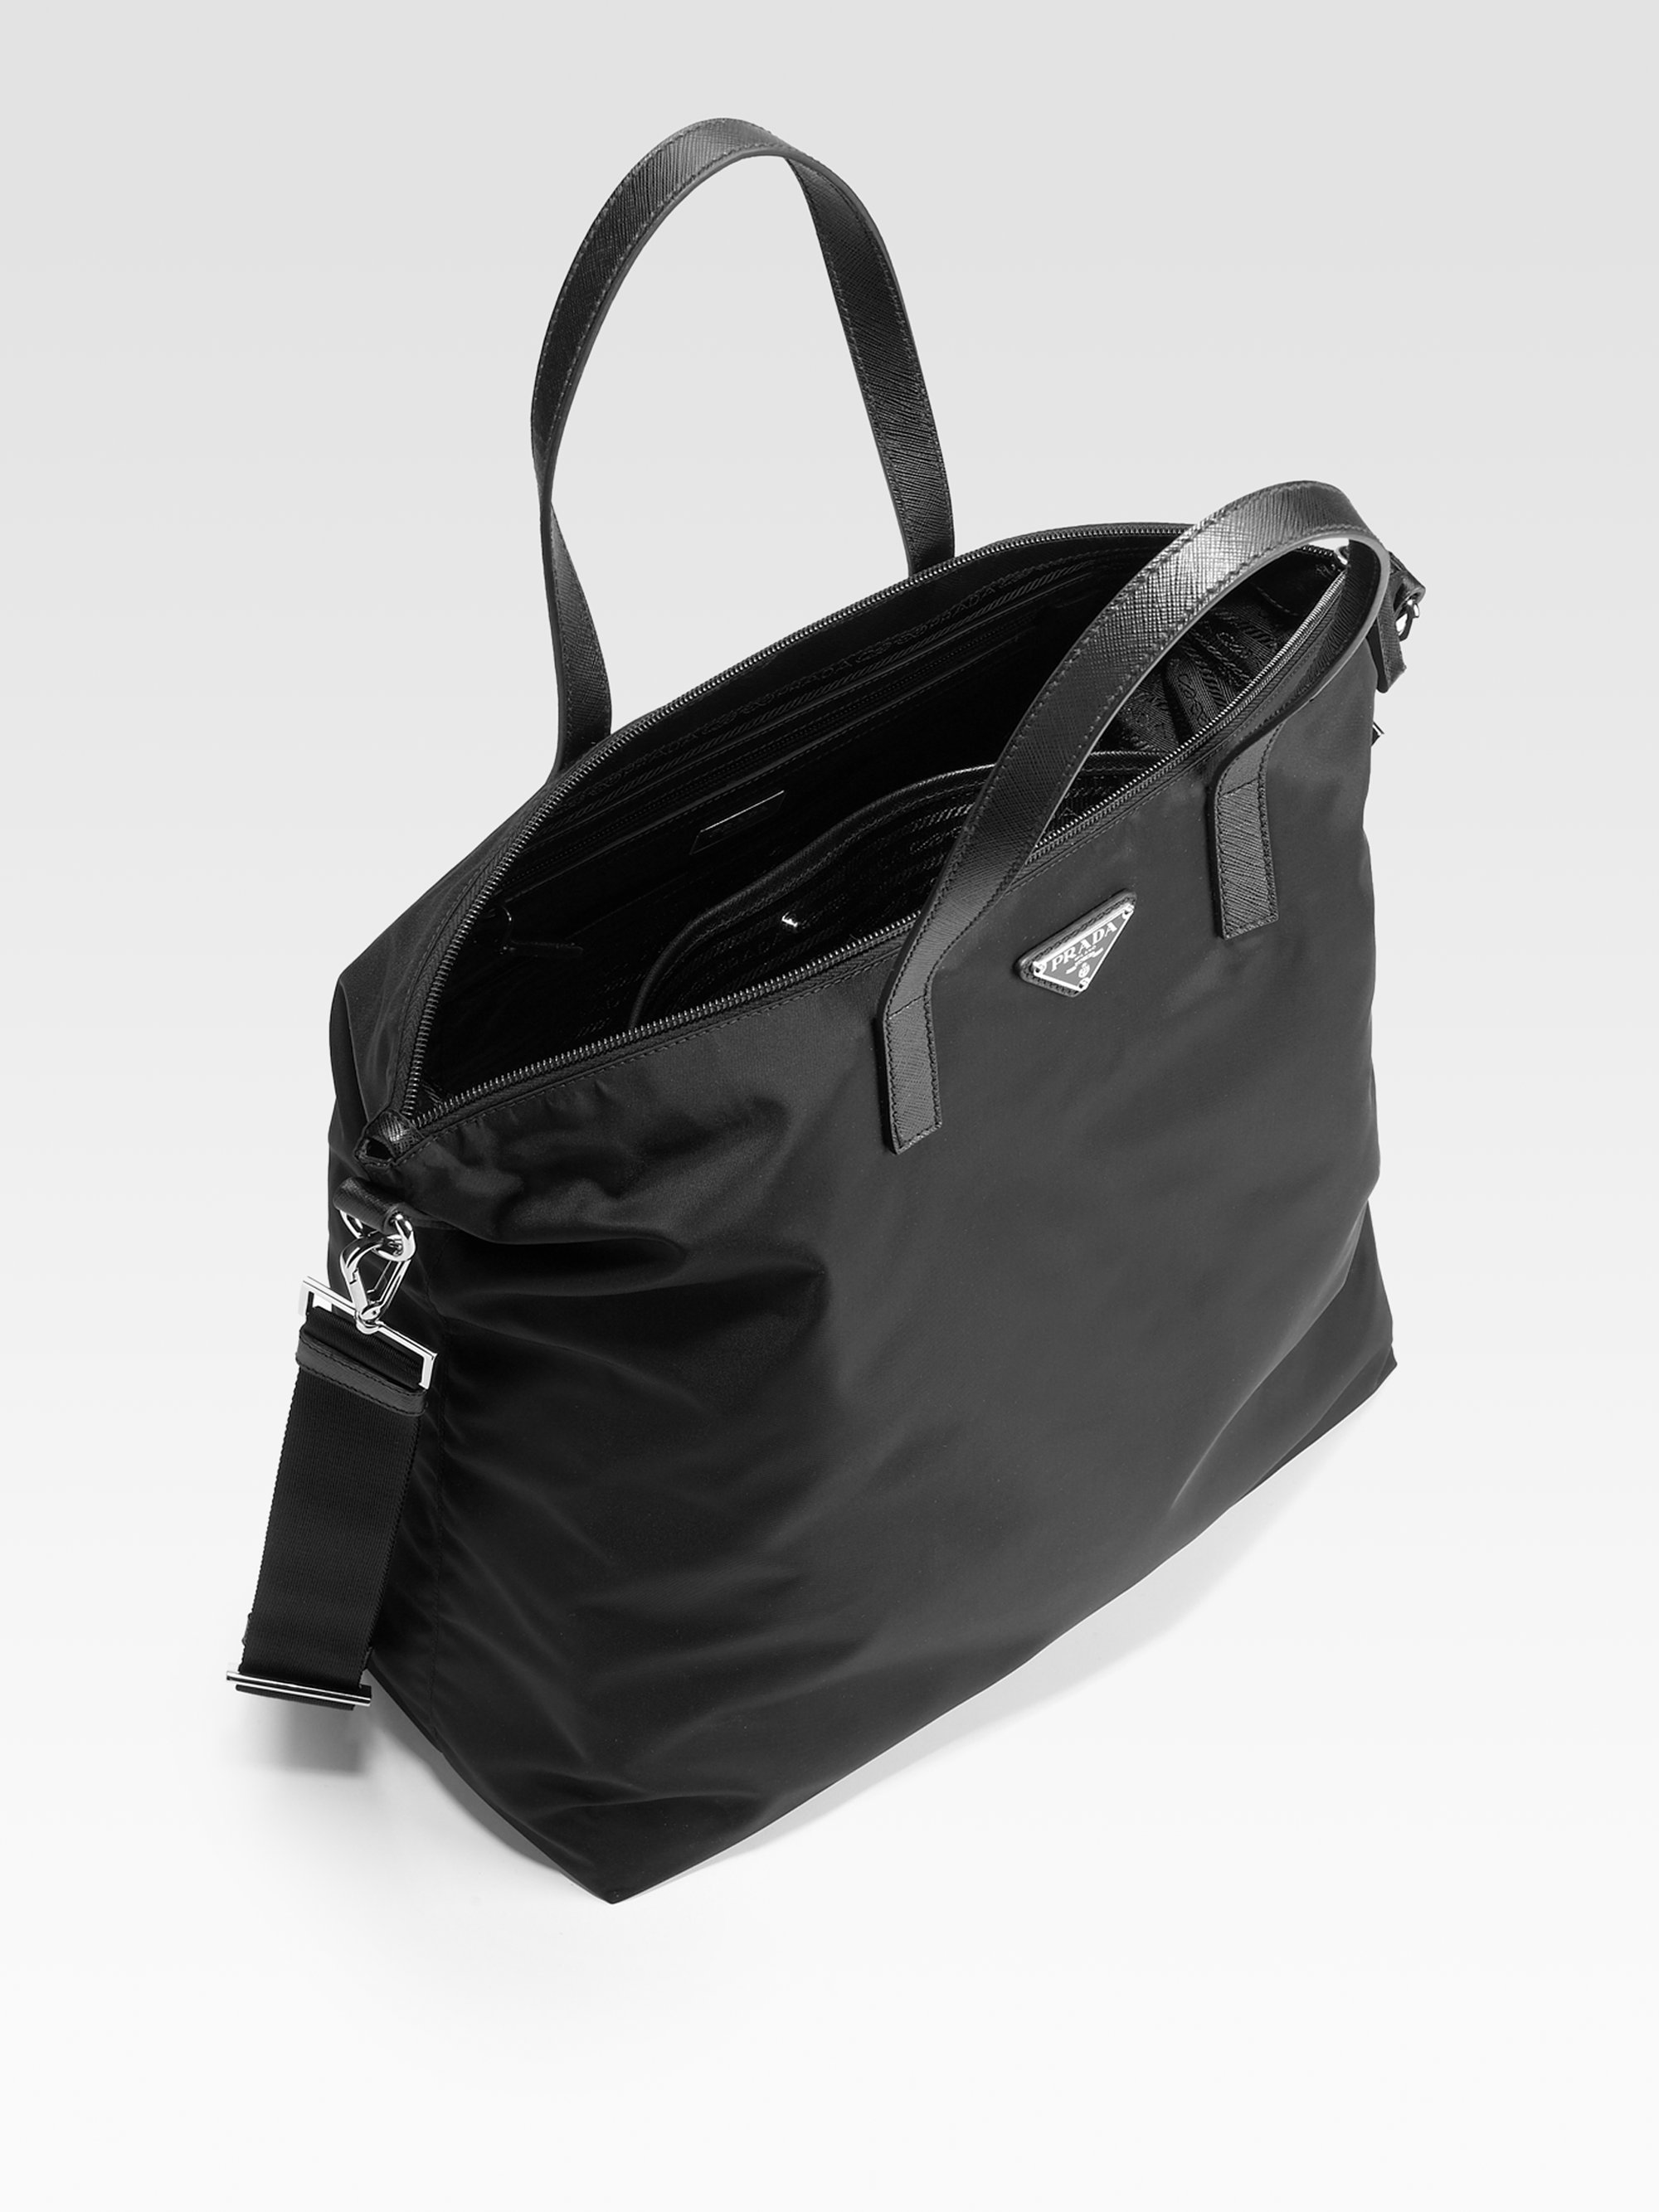 Prada Nylon Purses And Handbags | semashow.com